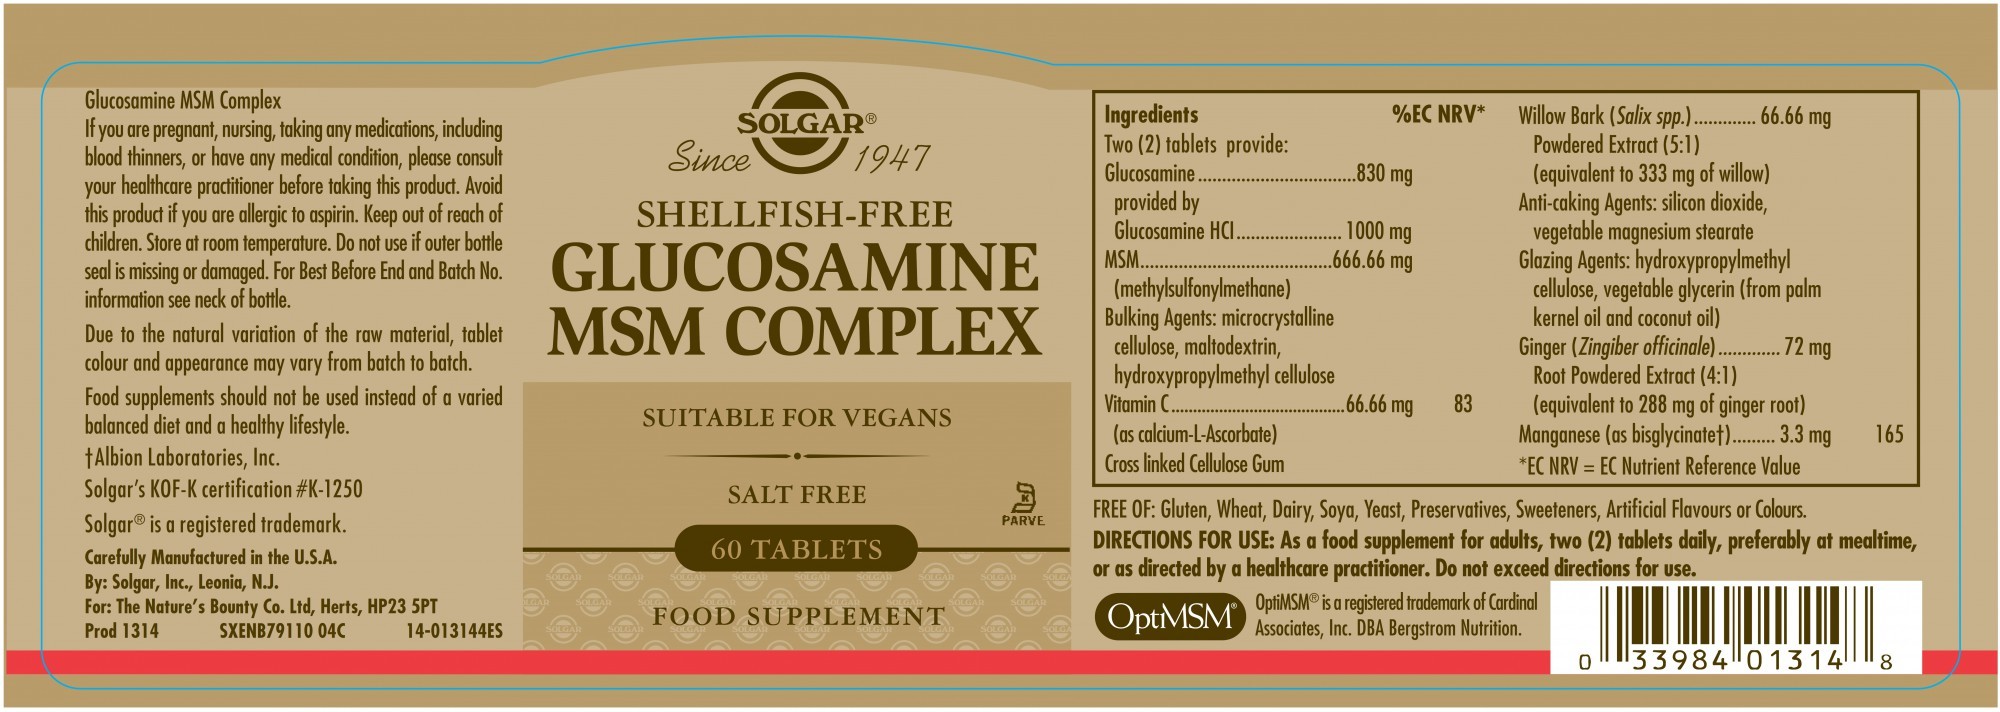 Solgar Glucosamine Msm Complex (Shellfish-Free)